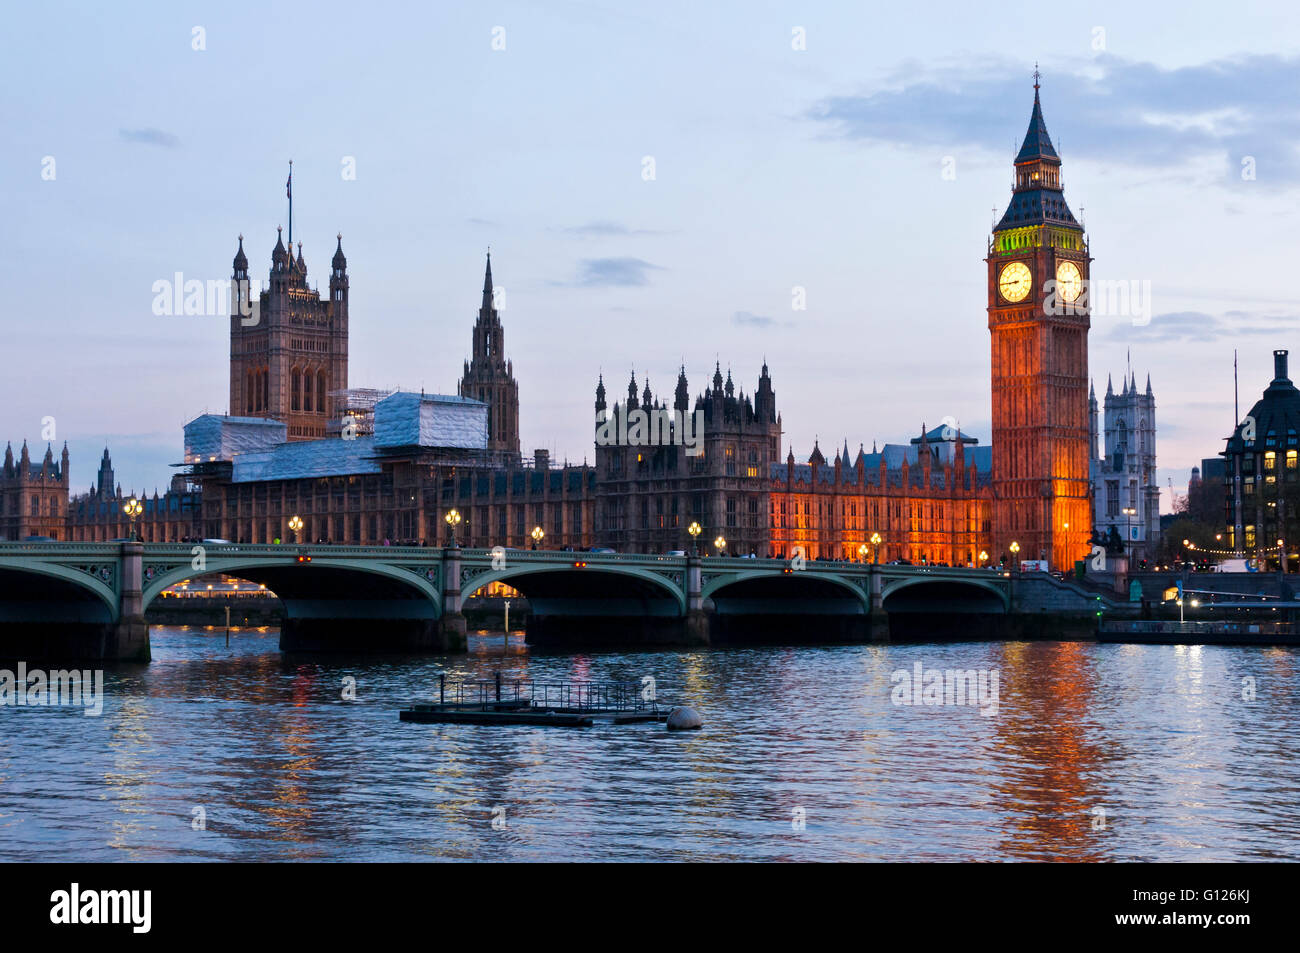 Vue sur Big Ben et les chambres du Parlement, Londres, Angleterre Banque D'Images